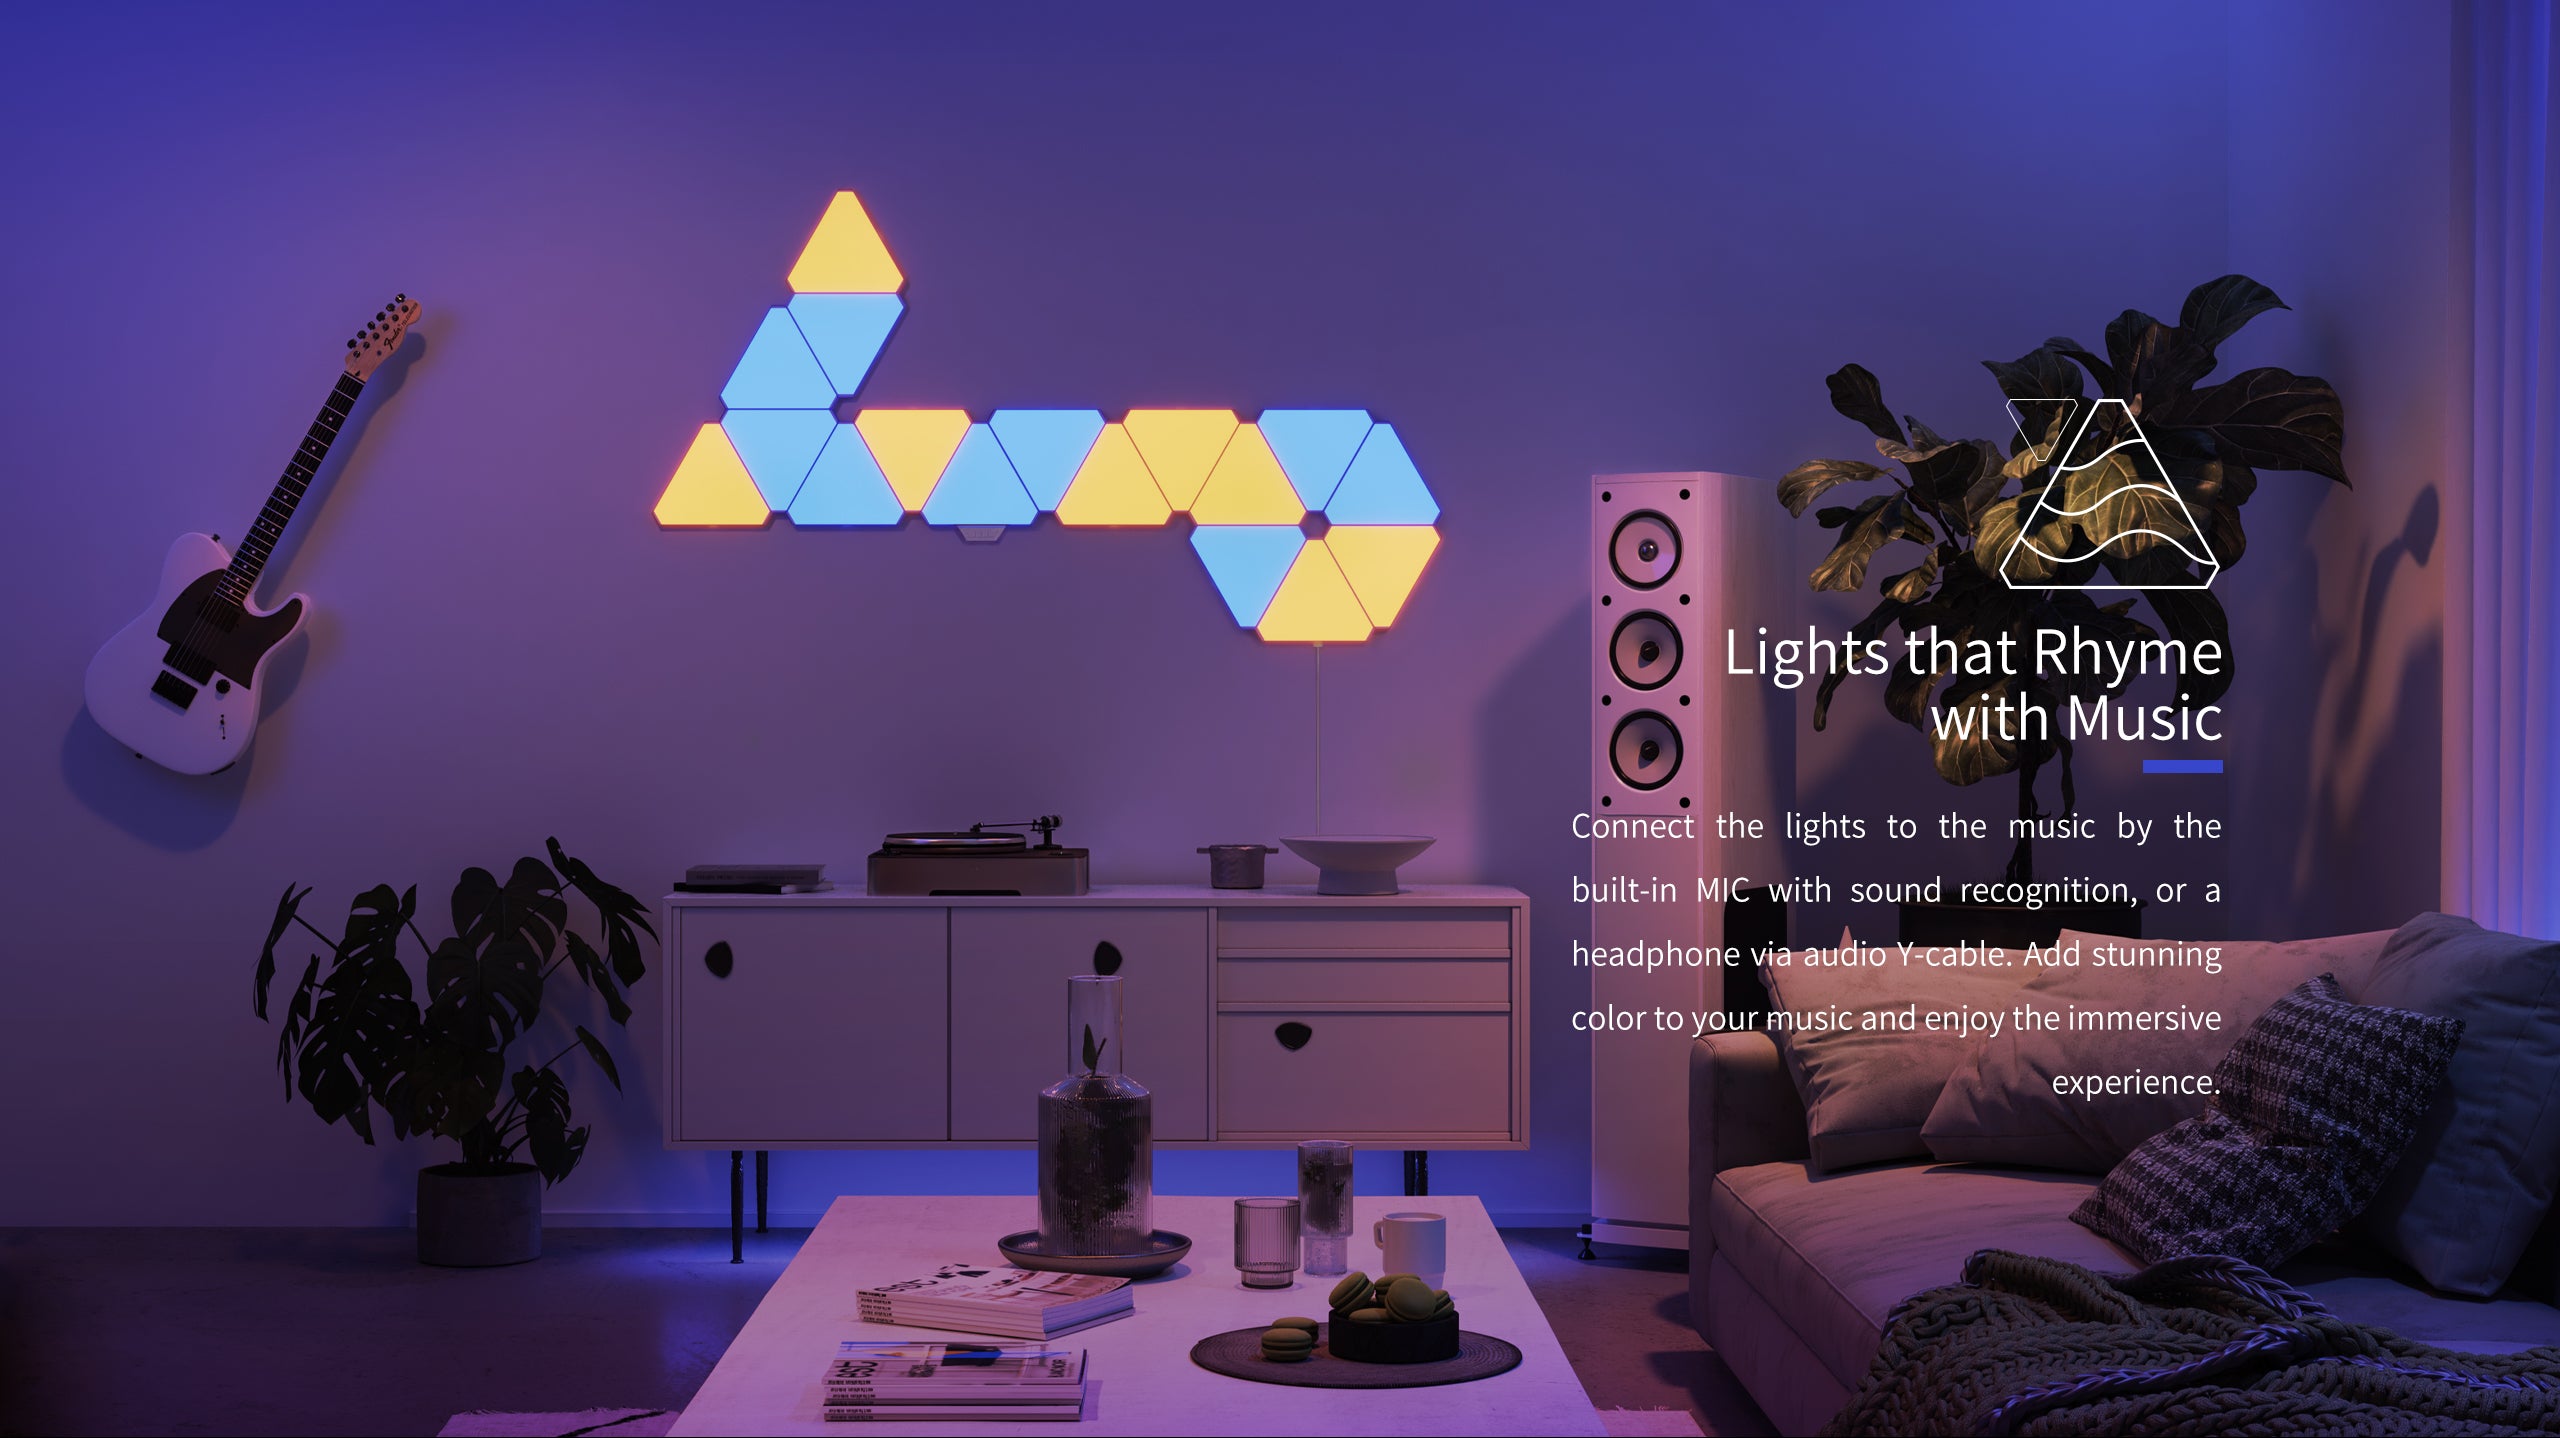 Yeelight Smart LED Light Panels review - Phandroid